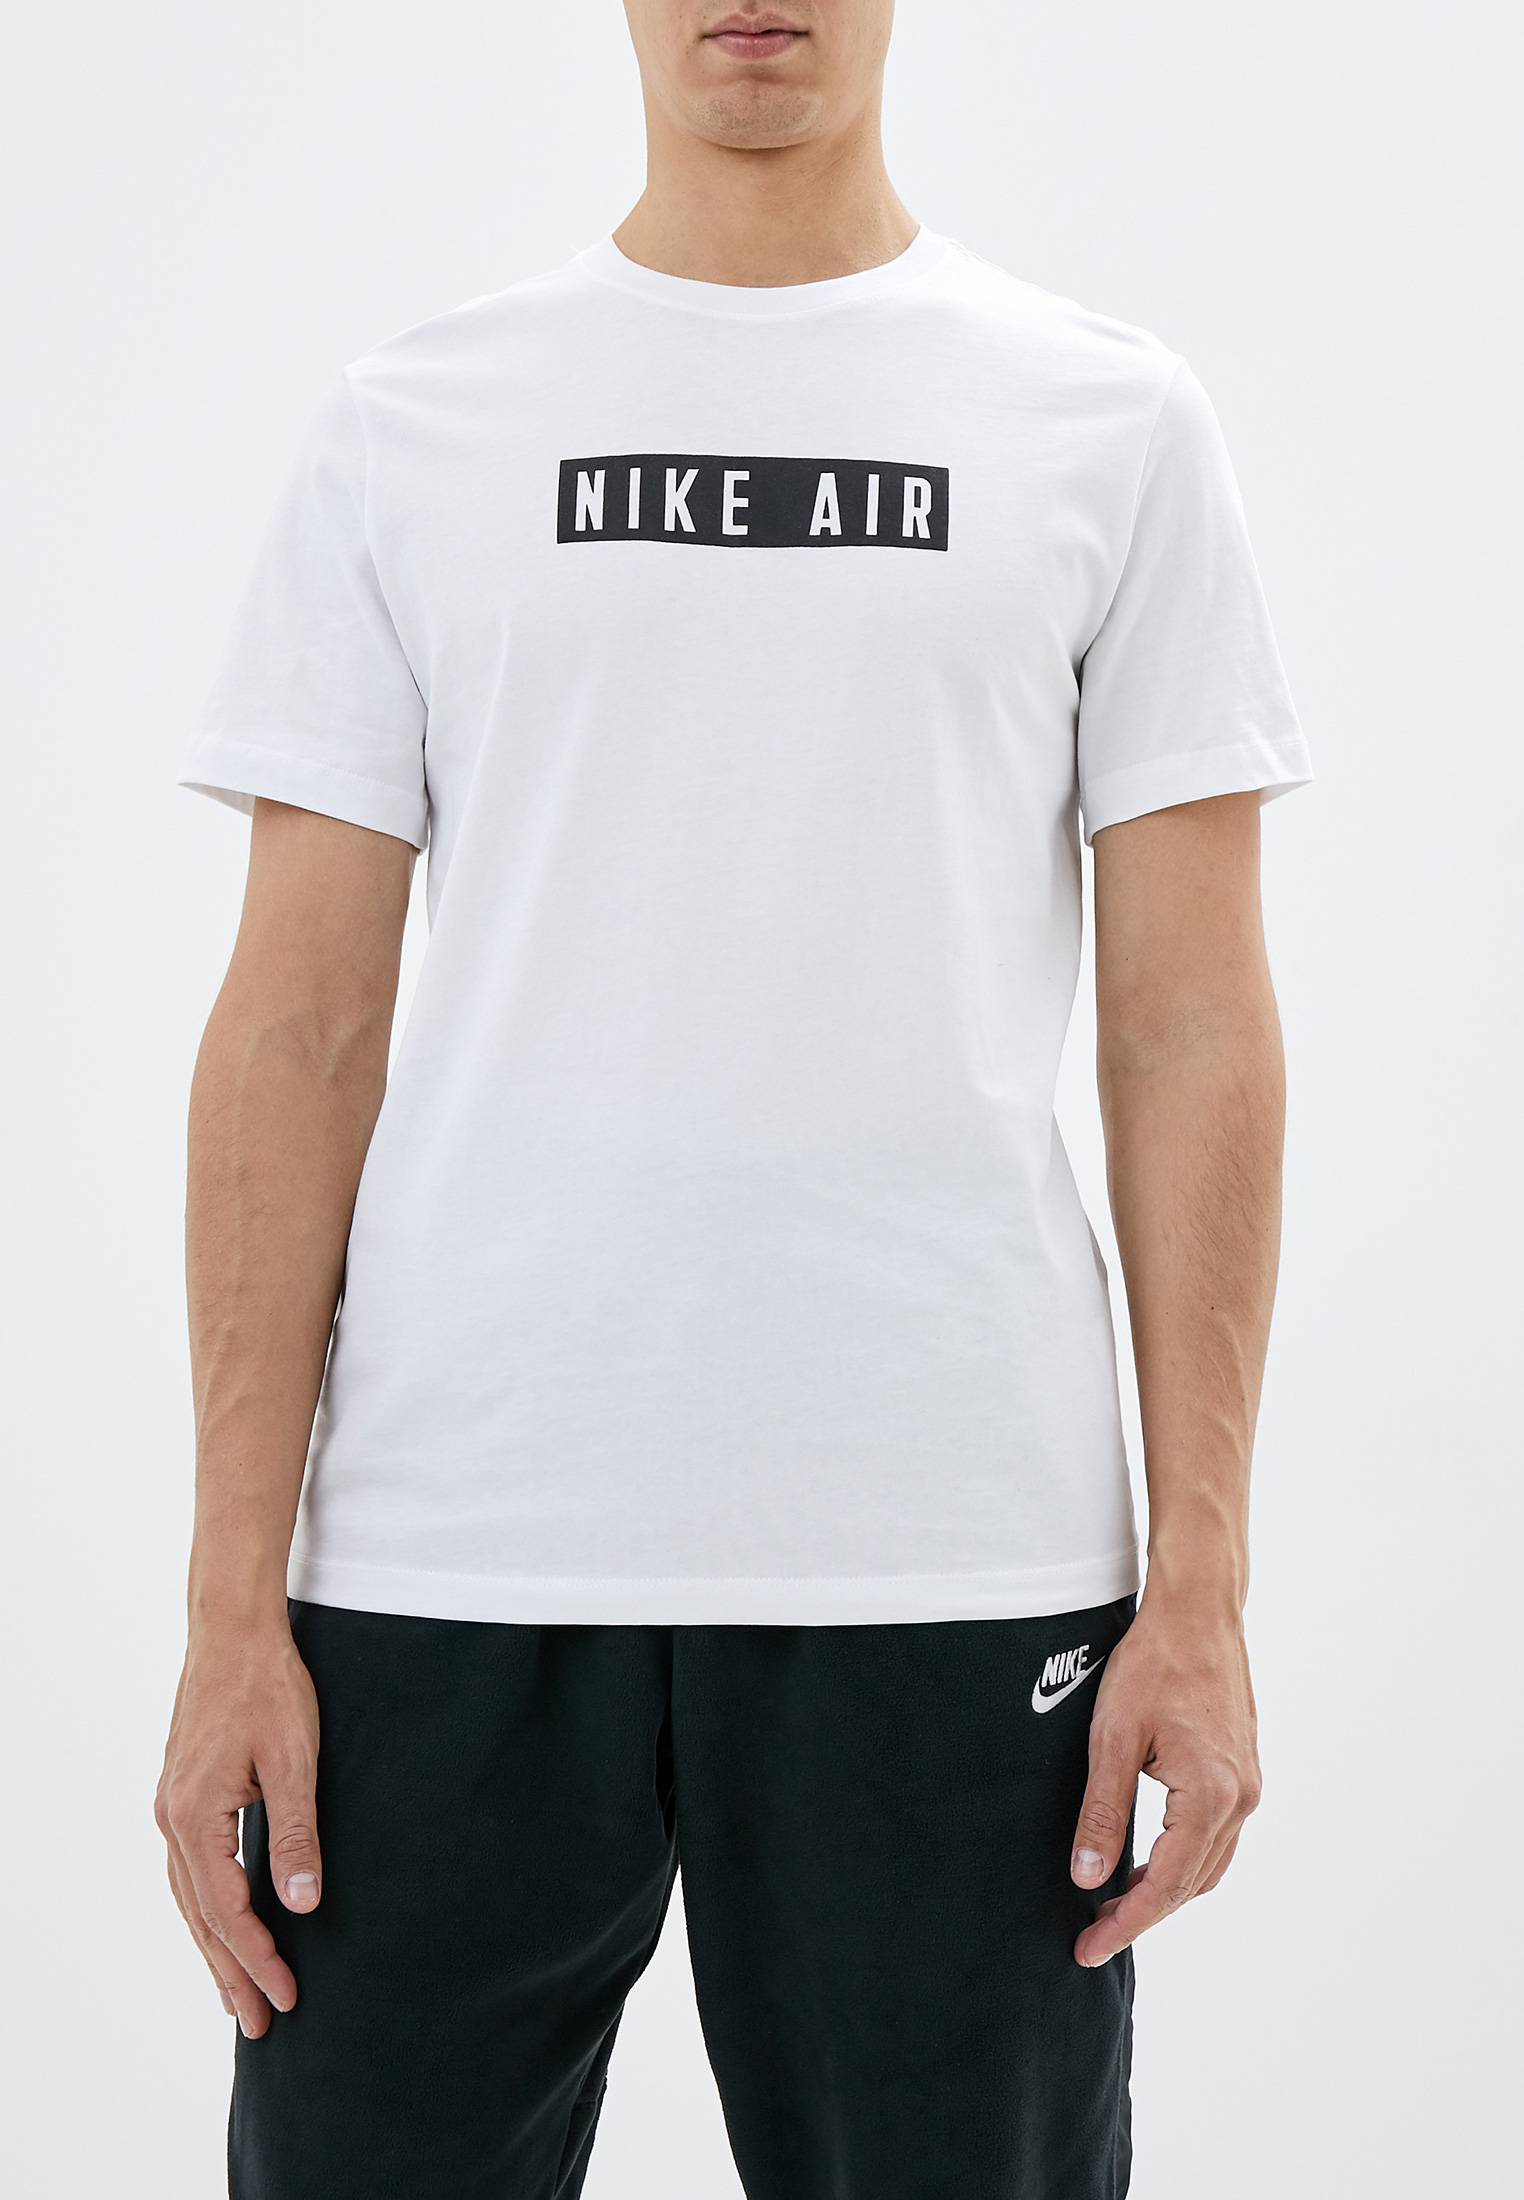 Футболка найк АИР белая. Nike Air футболка мужская. Футболка мужская белая Air. Найк футболка цвета.